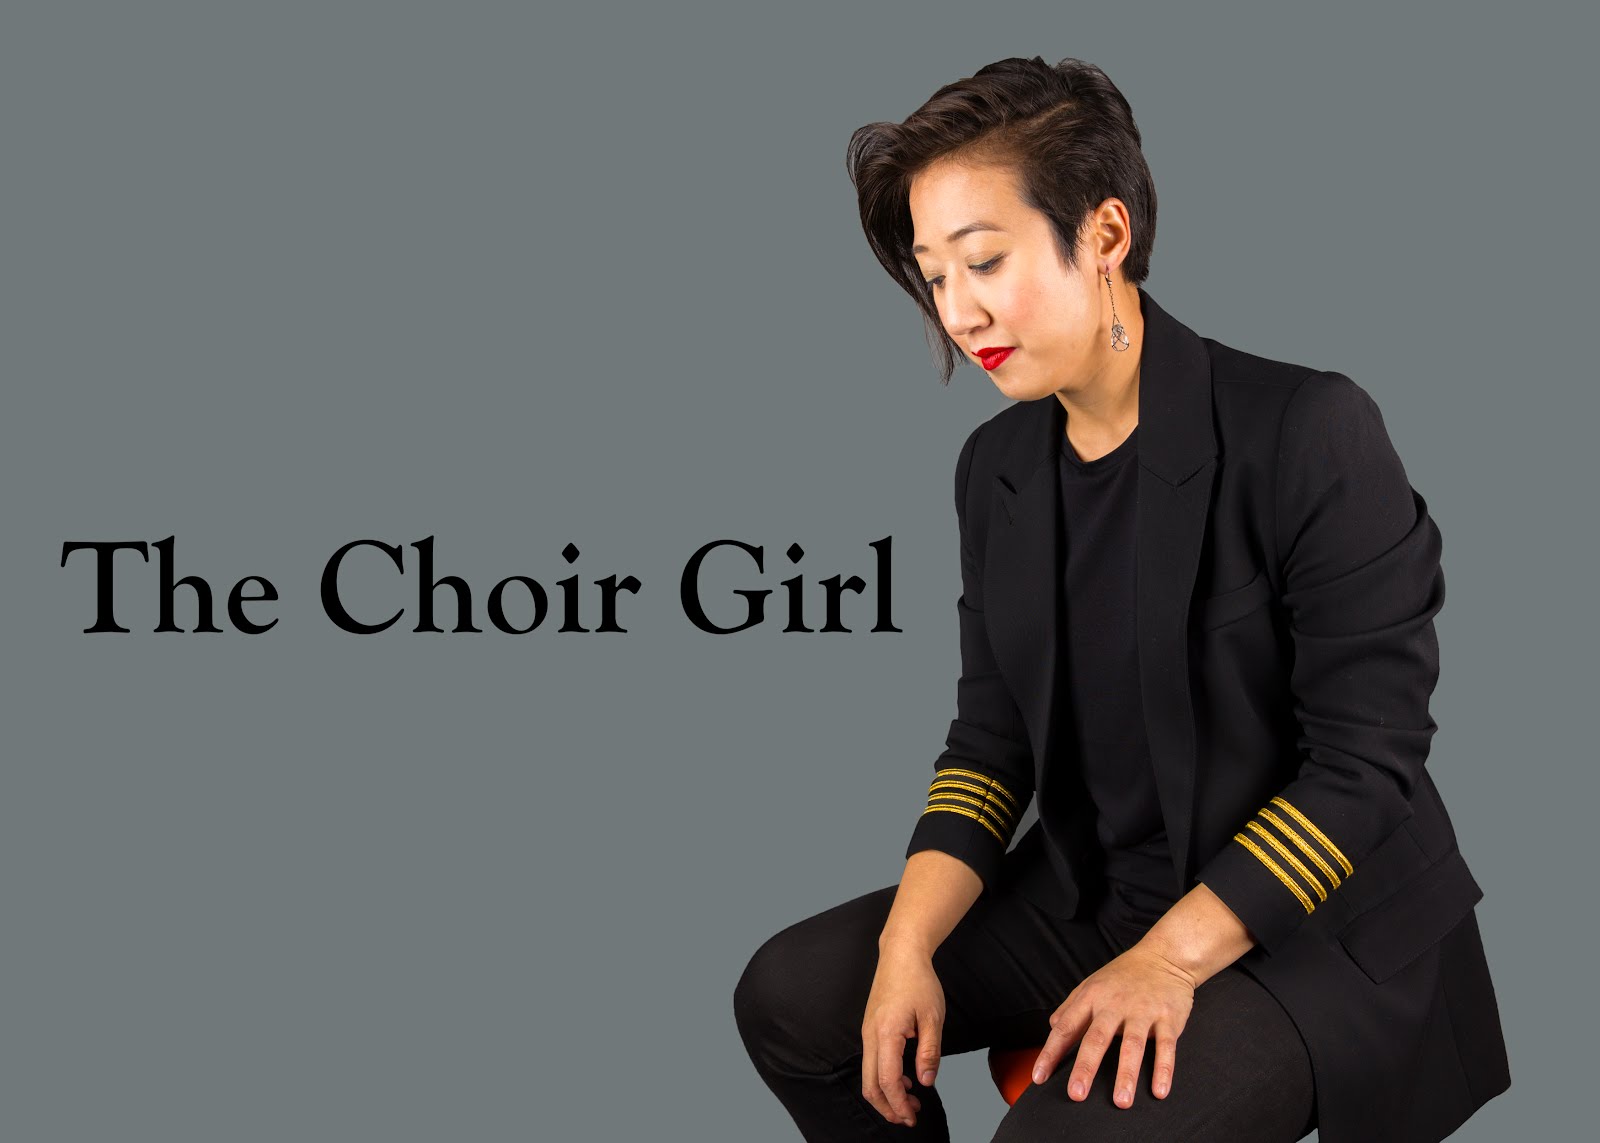 The Choir Girl